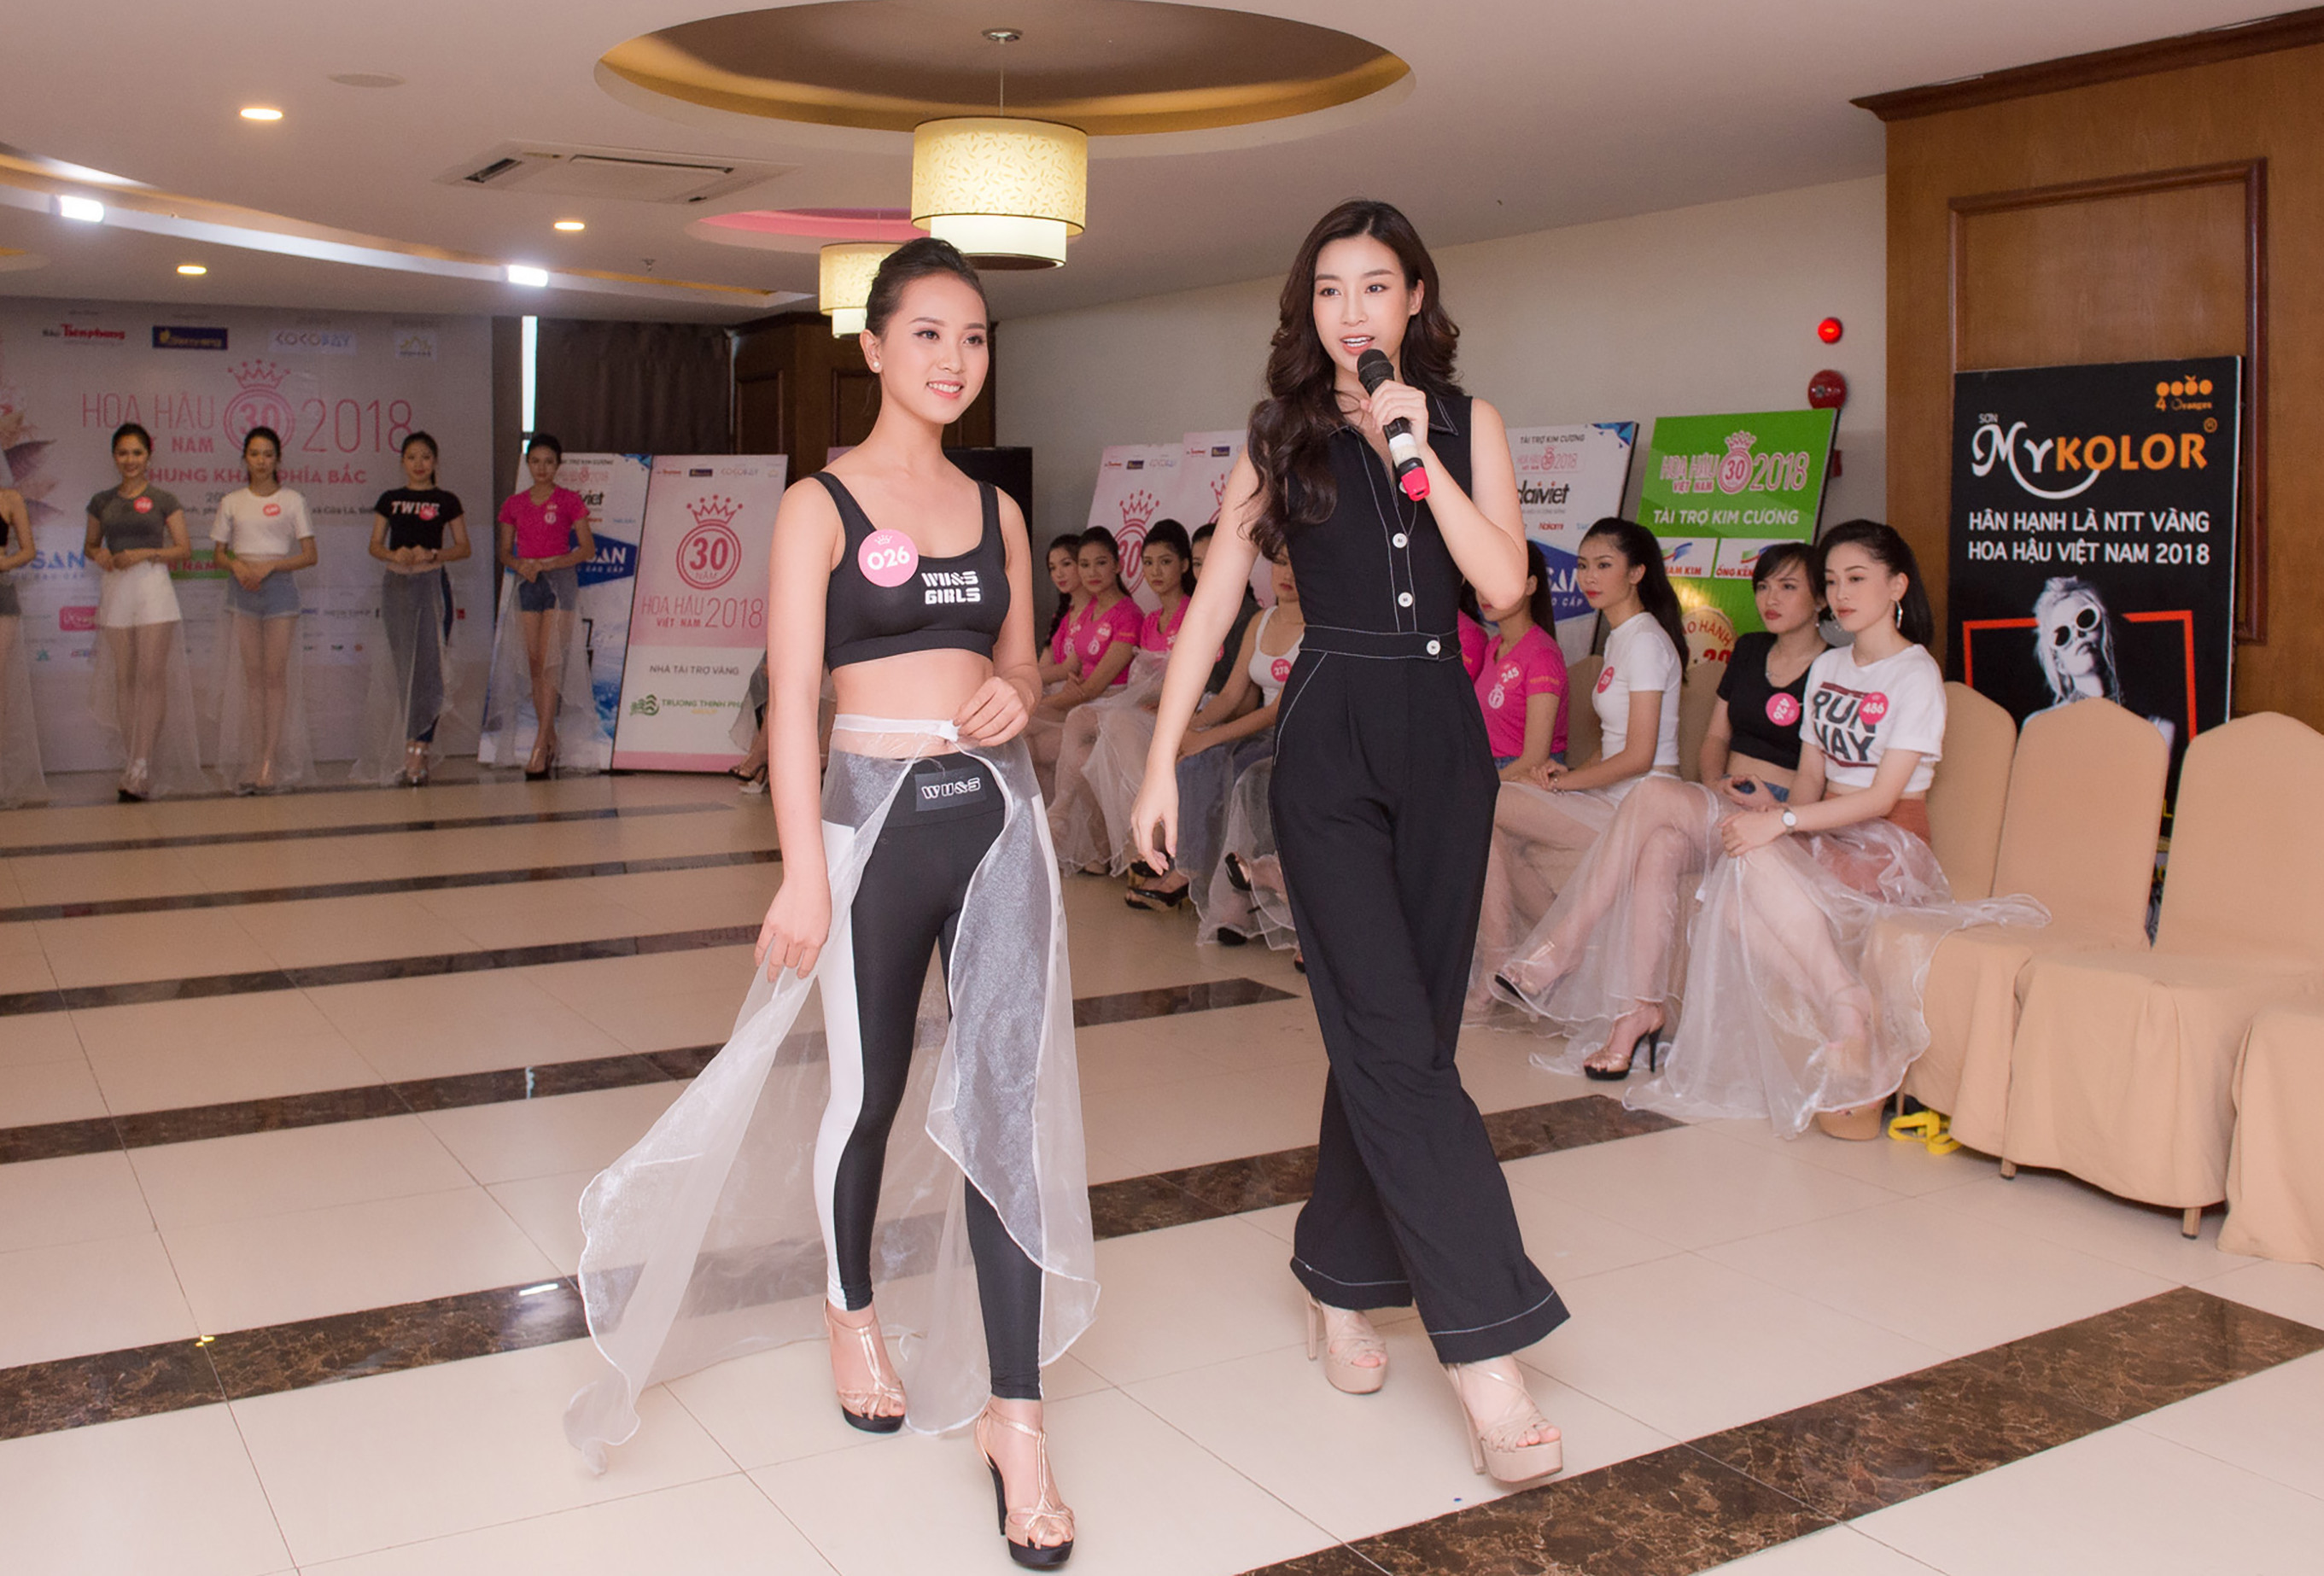  Diệu Ngân tự tin tập catwalk cùng Hoa hậu Mỹ Linh tại cửa lò  Nghệ An.